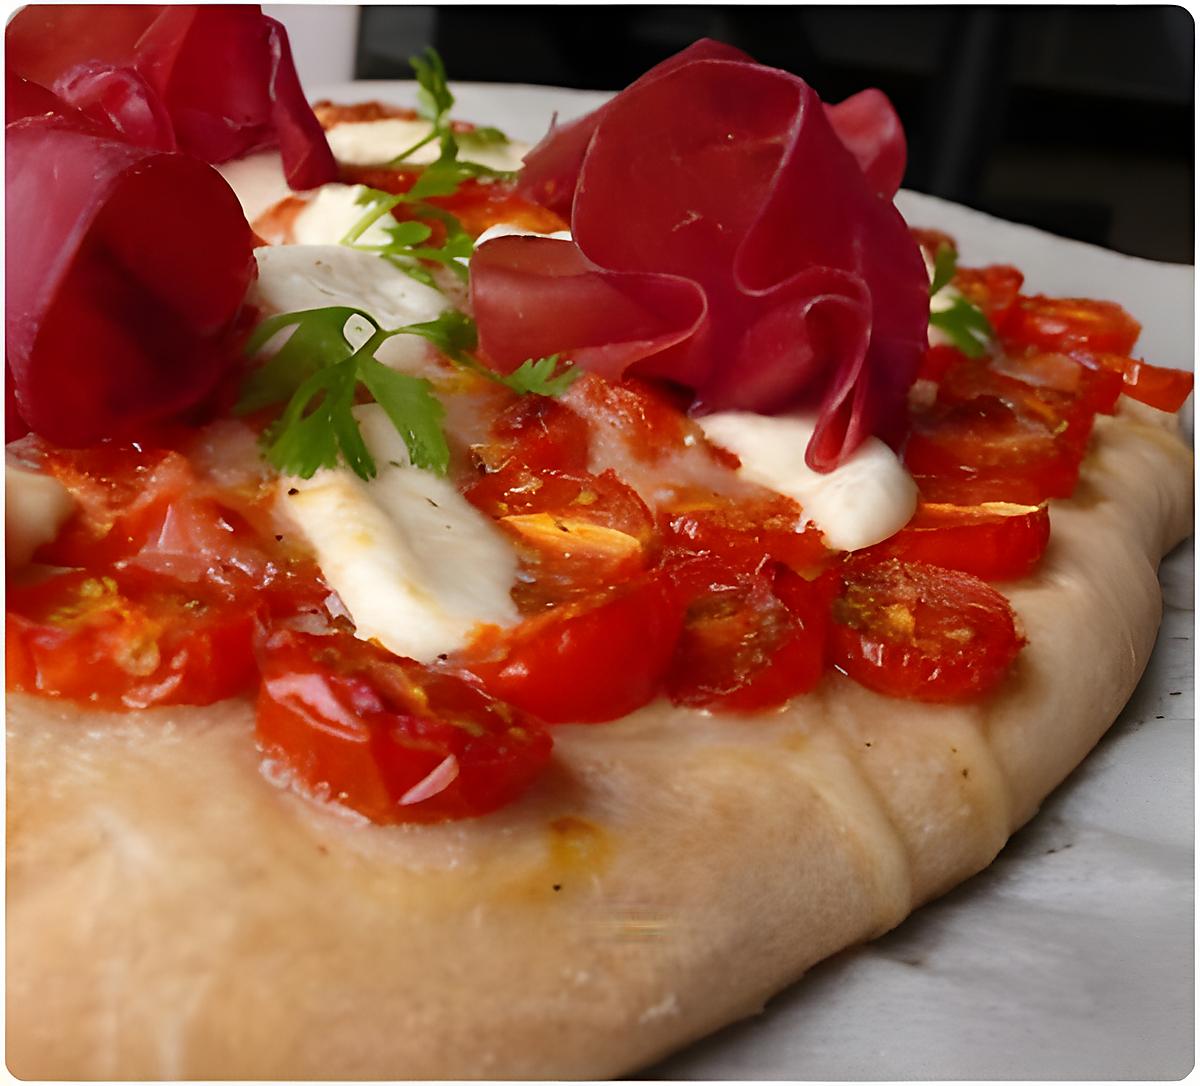 recette Pizza de tomates cerises, bressaola et mozzarella